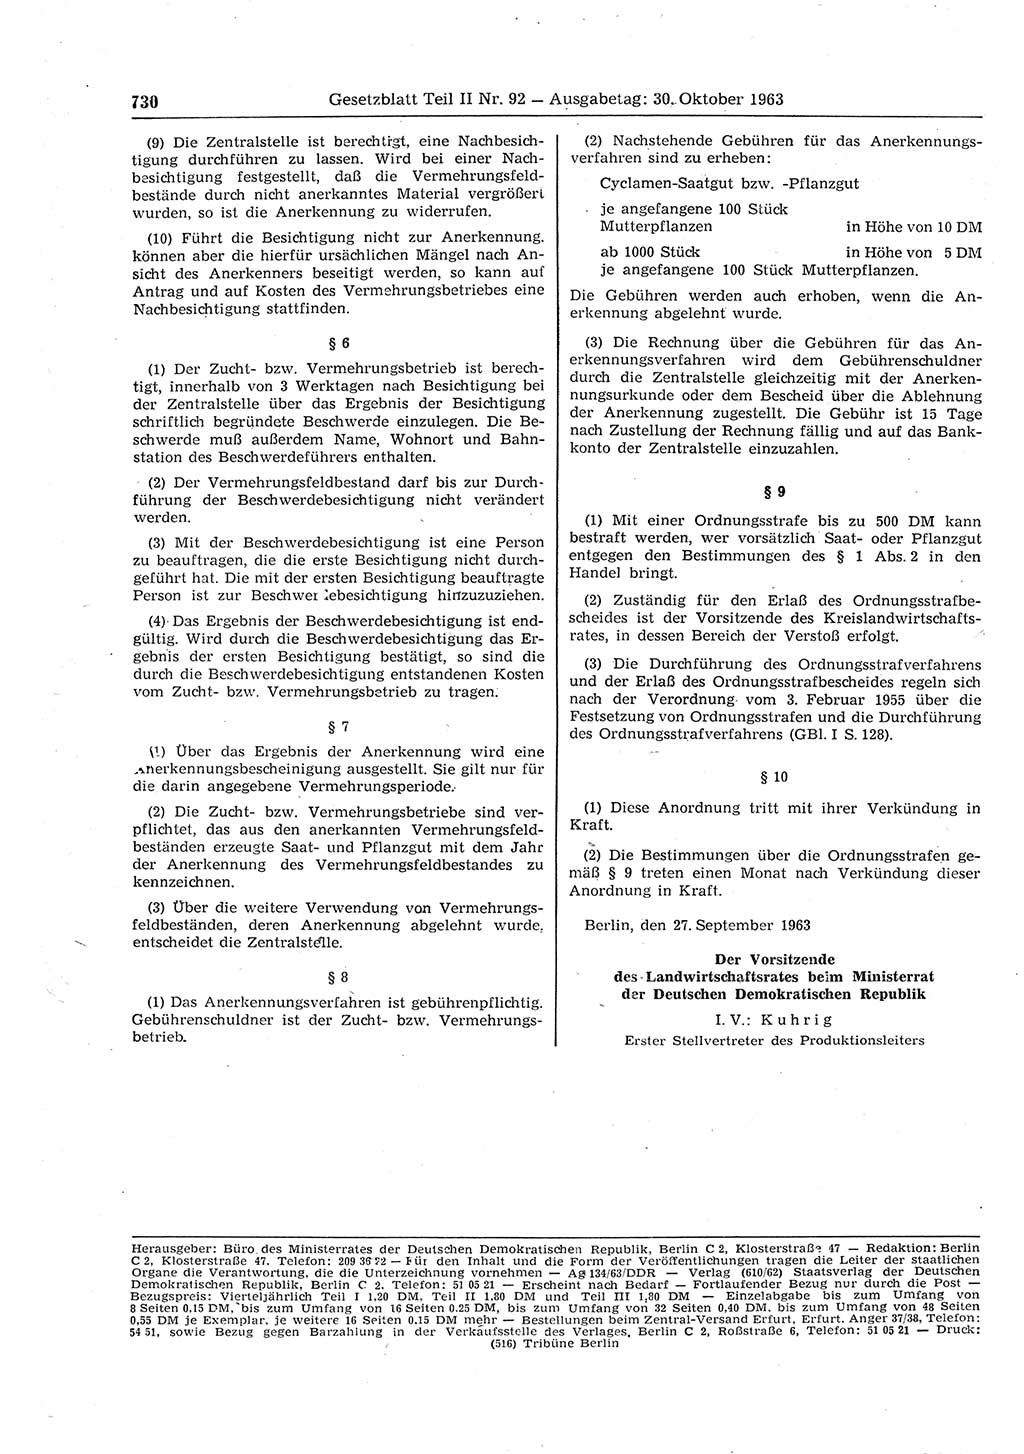 Gesetzblatt (GBl.) der Deutschen Demokratischen Republik (DDR) Teil ⅠⅠ 1963, Seite 730 (GBl. DDR ⅠⅠ 1963, S. 730)